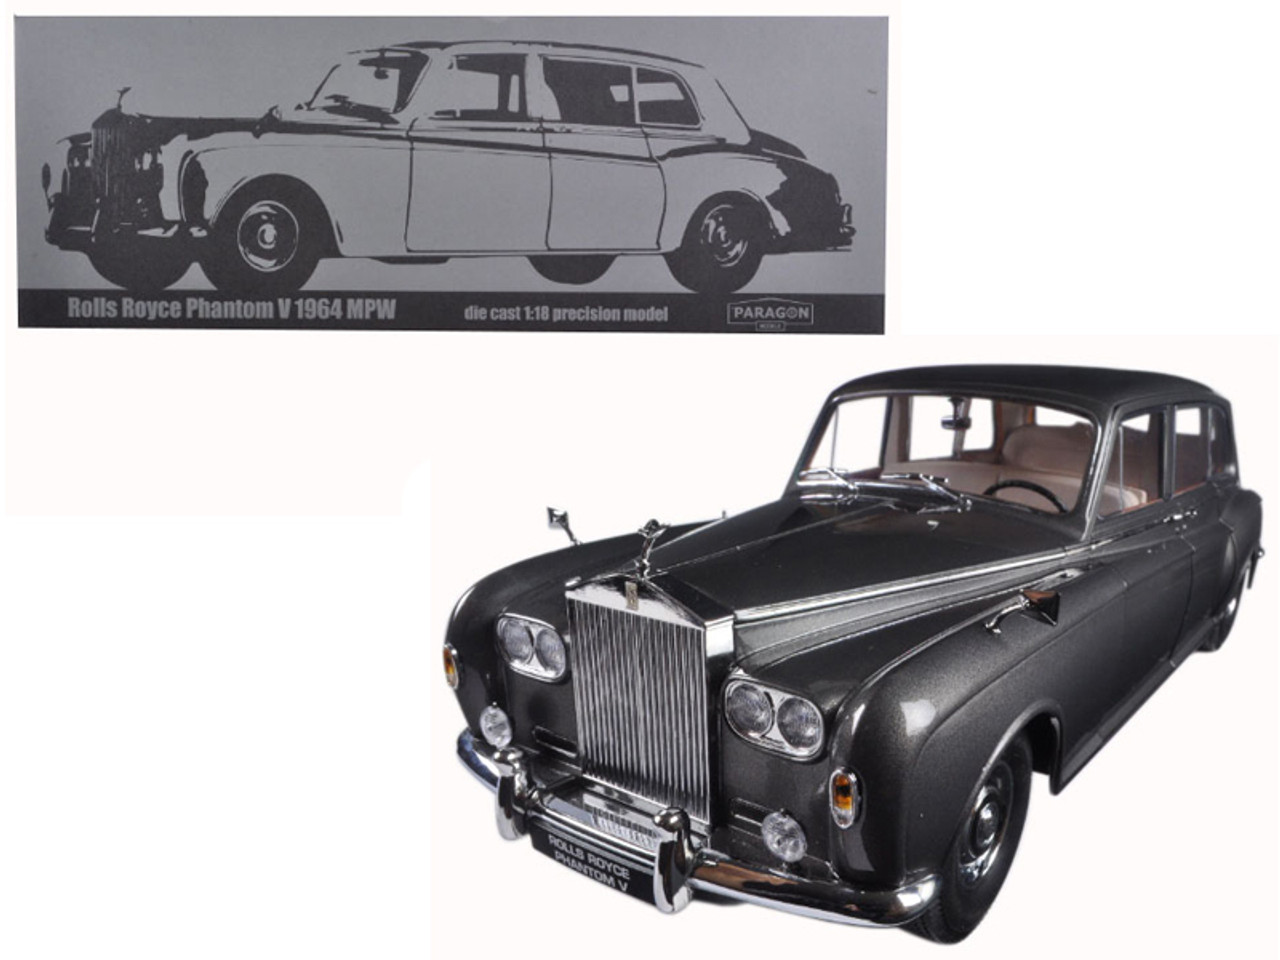 1964 Rolls Royce Phantom V MPW Gunmetal Grey LHD 1/18 Diecast Model Car by Paragon